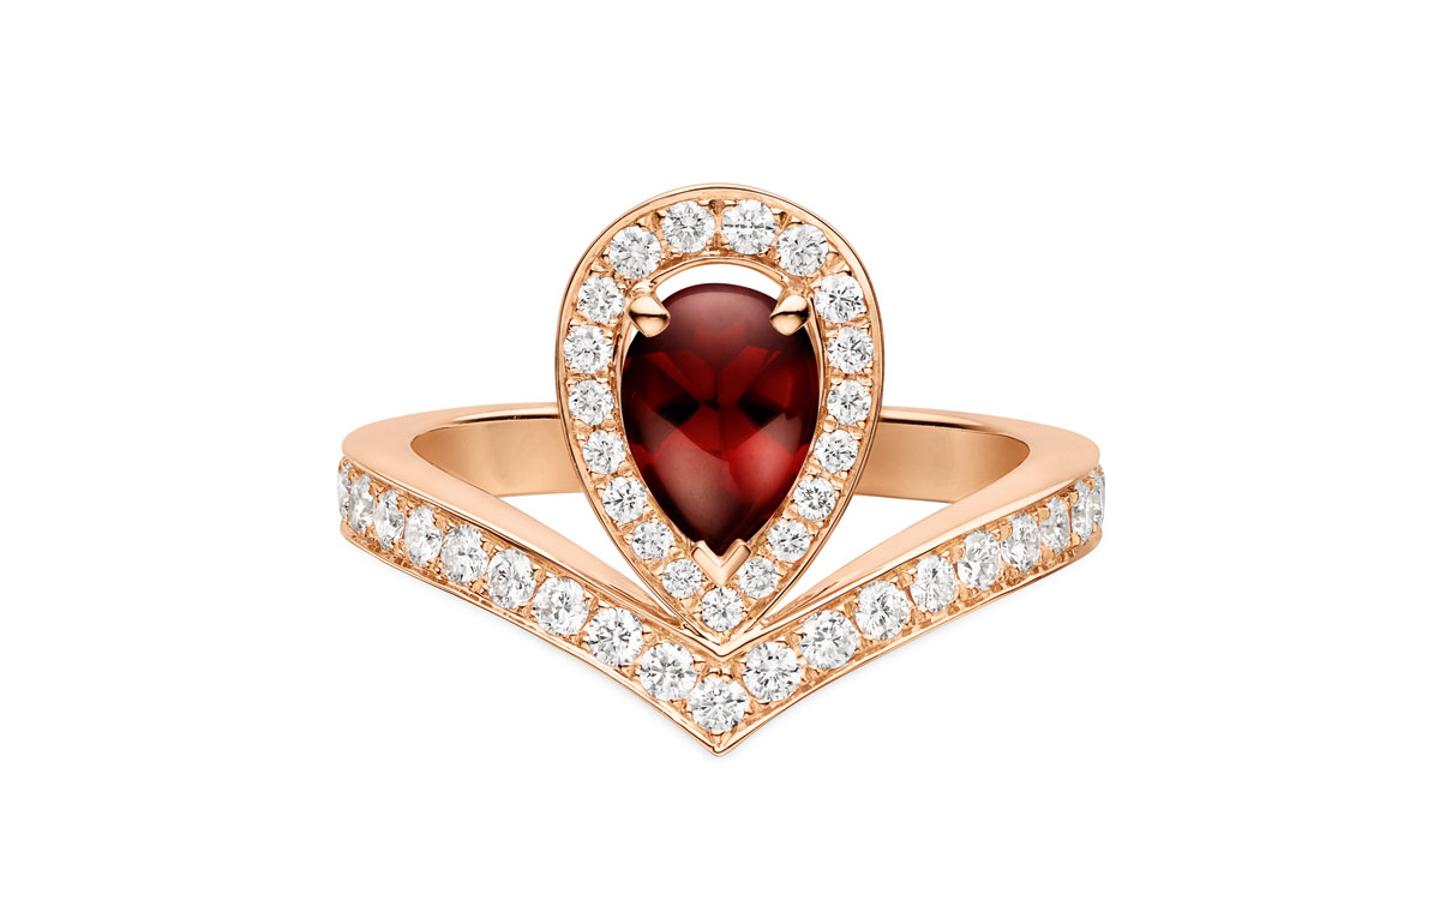 La firma de joyería Chaumet nos propone piezas muy exclusivas, enrte los que destaca una joya de excepción como es su anillo Joséphine Aigrette, con rubí incluido. (Precio: CPV(¡)